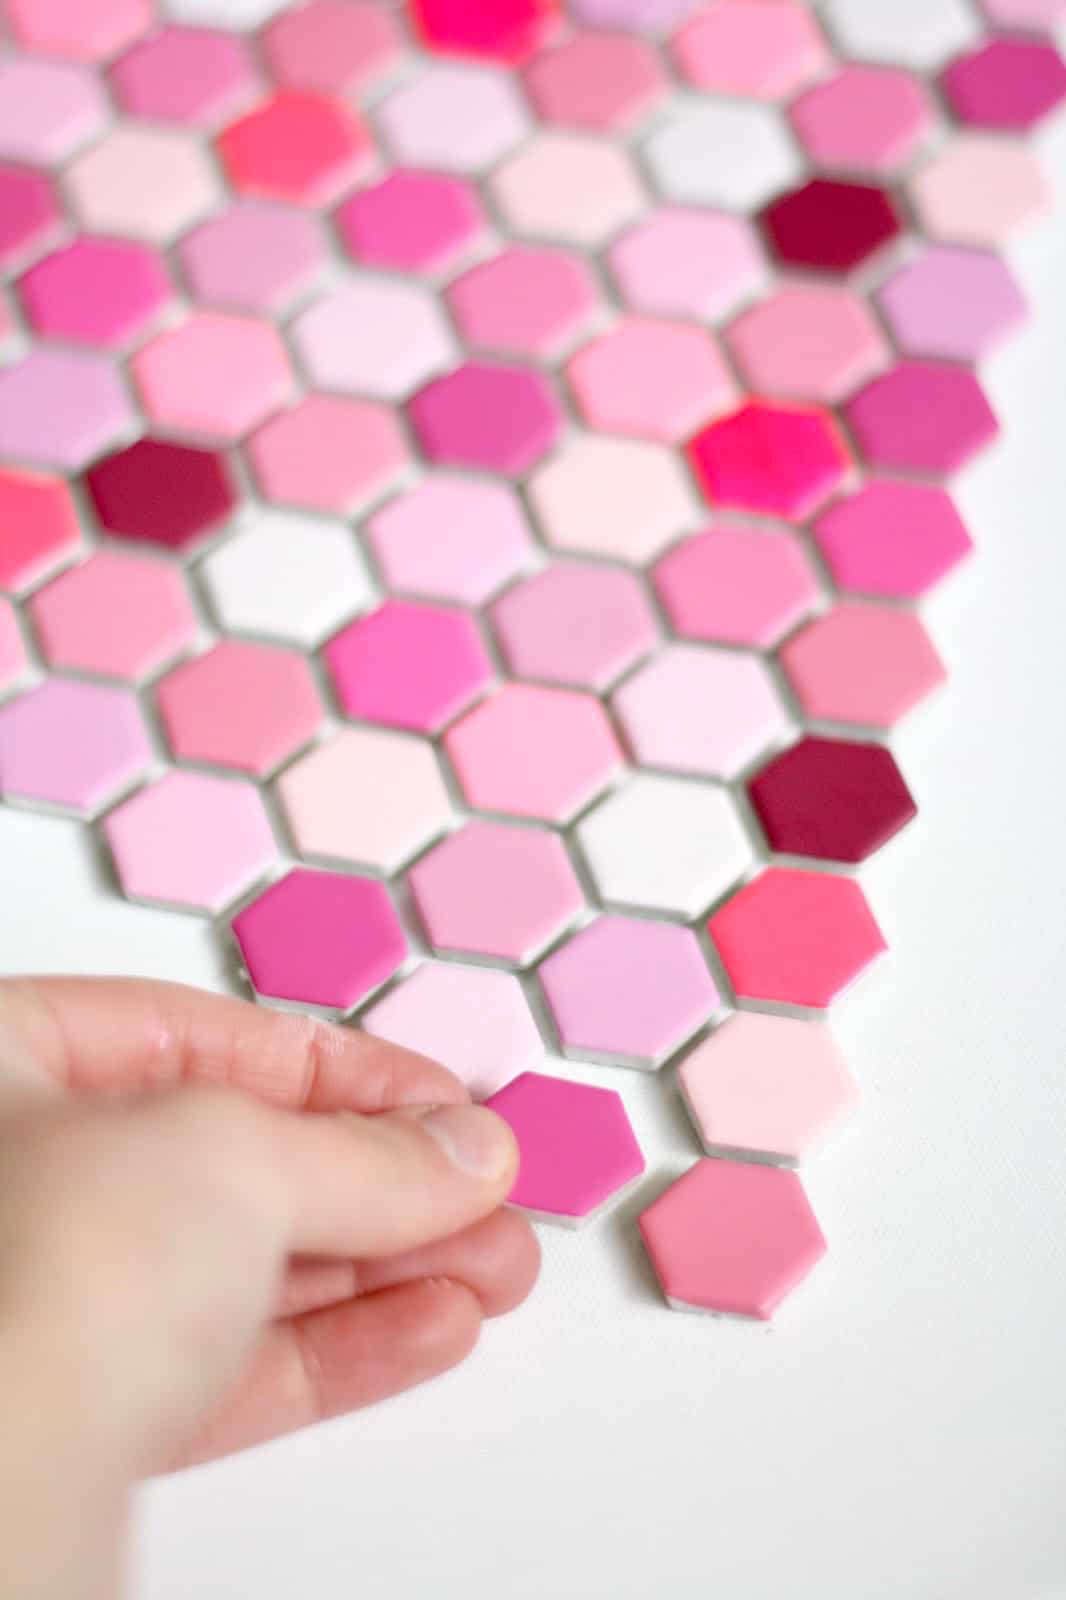 Assembling hexagon tiles into a heart shape